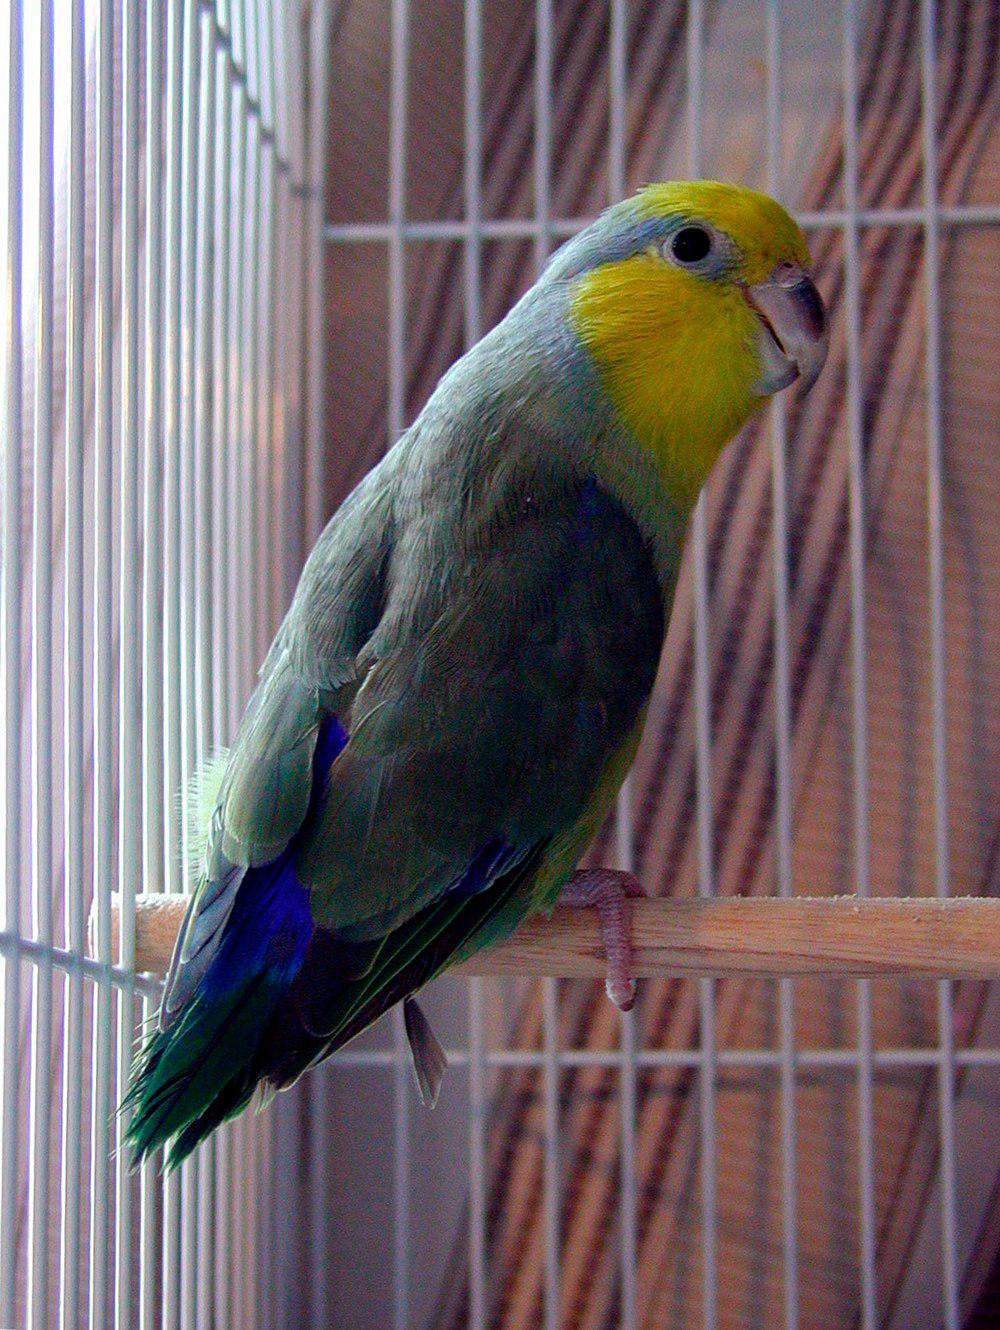 黄脸鹦哥 / Yellow-faced Parrotlet / Forpus xanthops